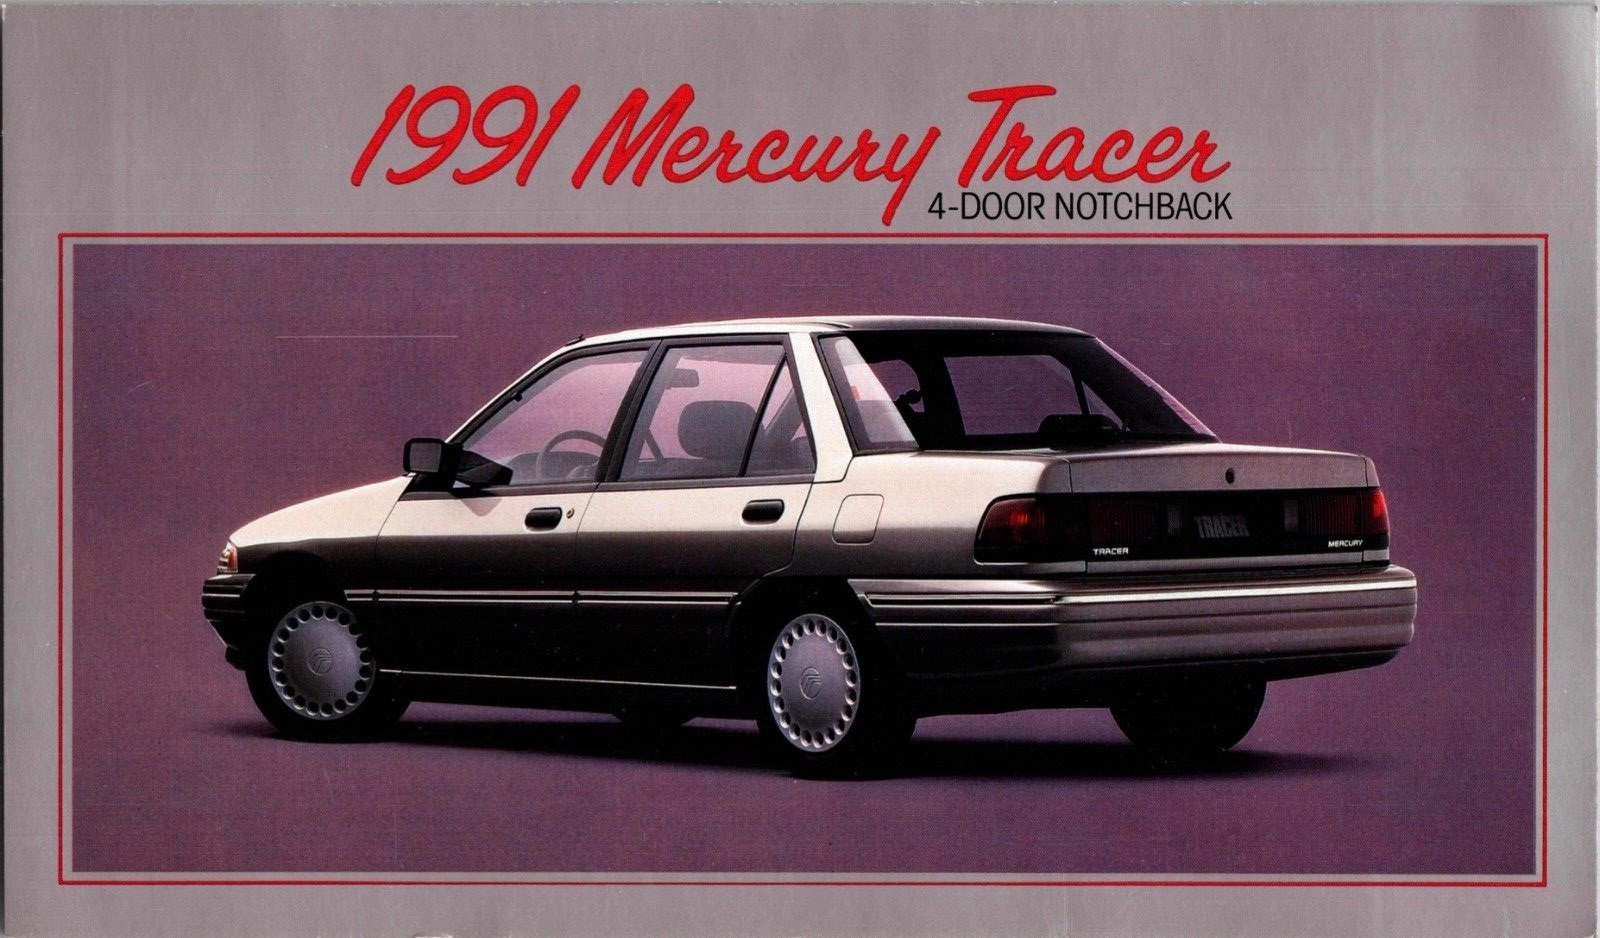 Vintage 1991 Mercury Tracer Notchback Advertising Oversized Dealer Postcard